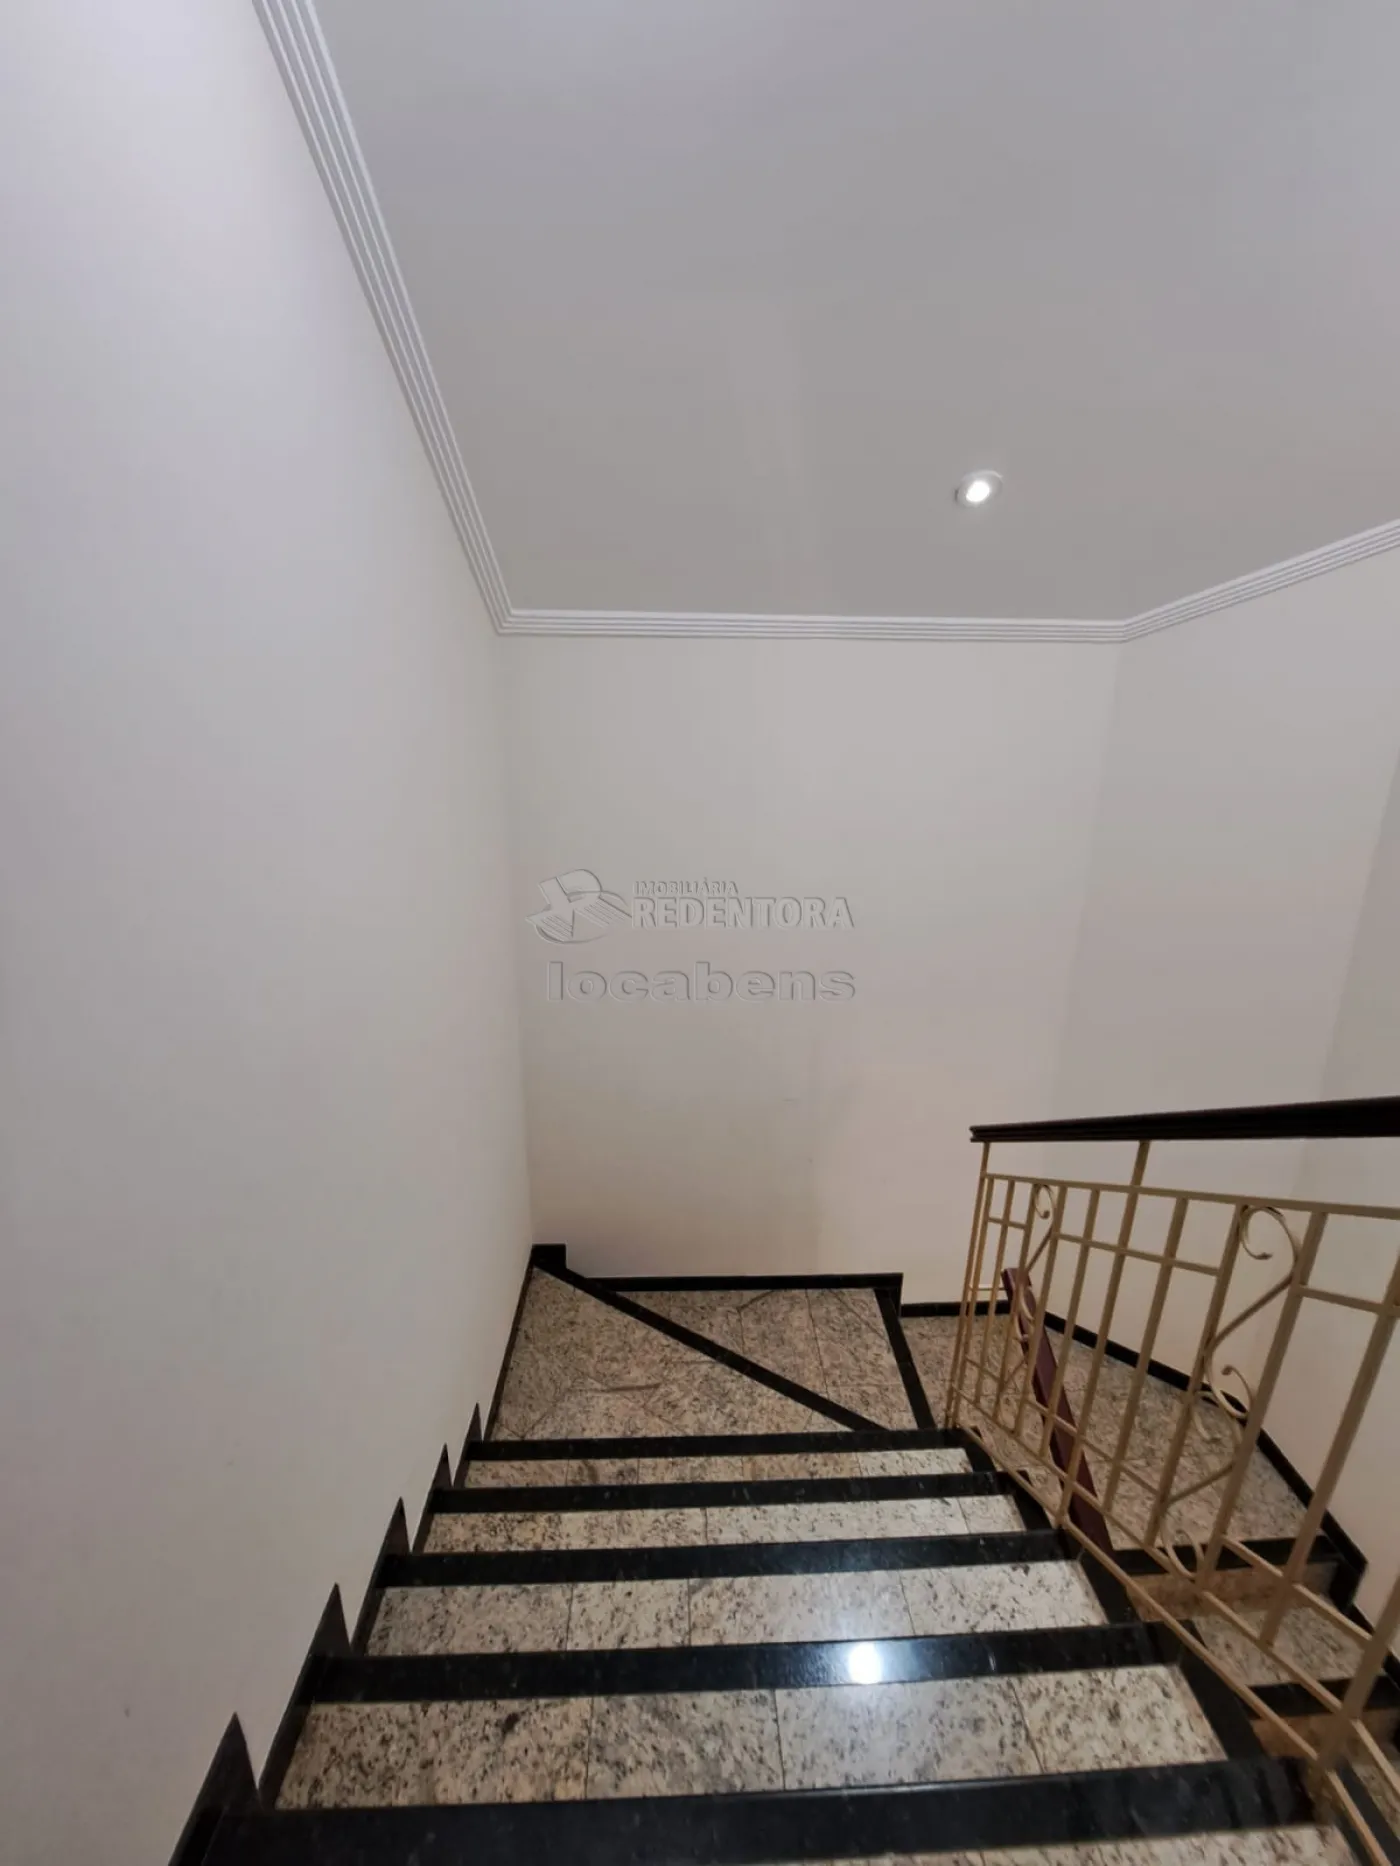 Alugar Casa / Padrão em São José do Rio Preto apenas R$ 4.800,00 - Foto 13